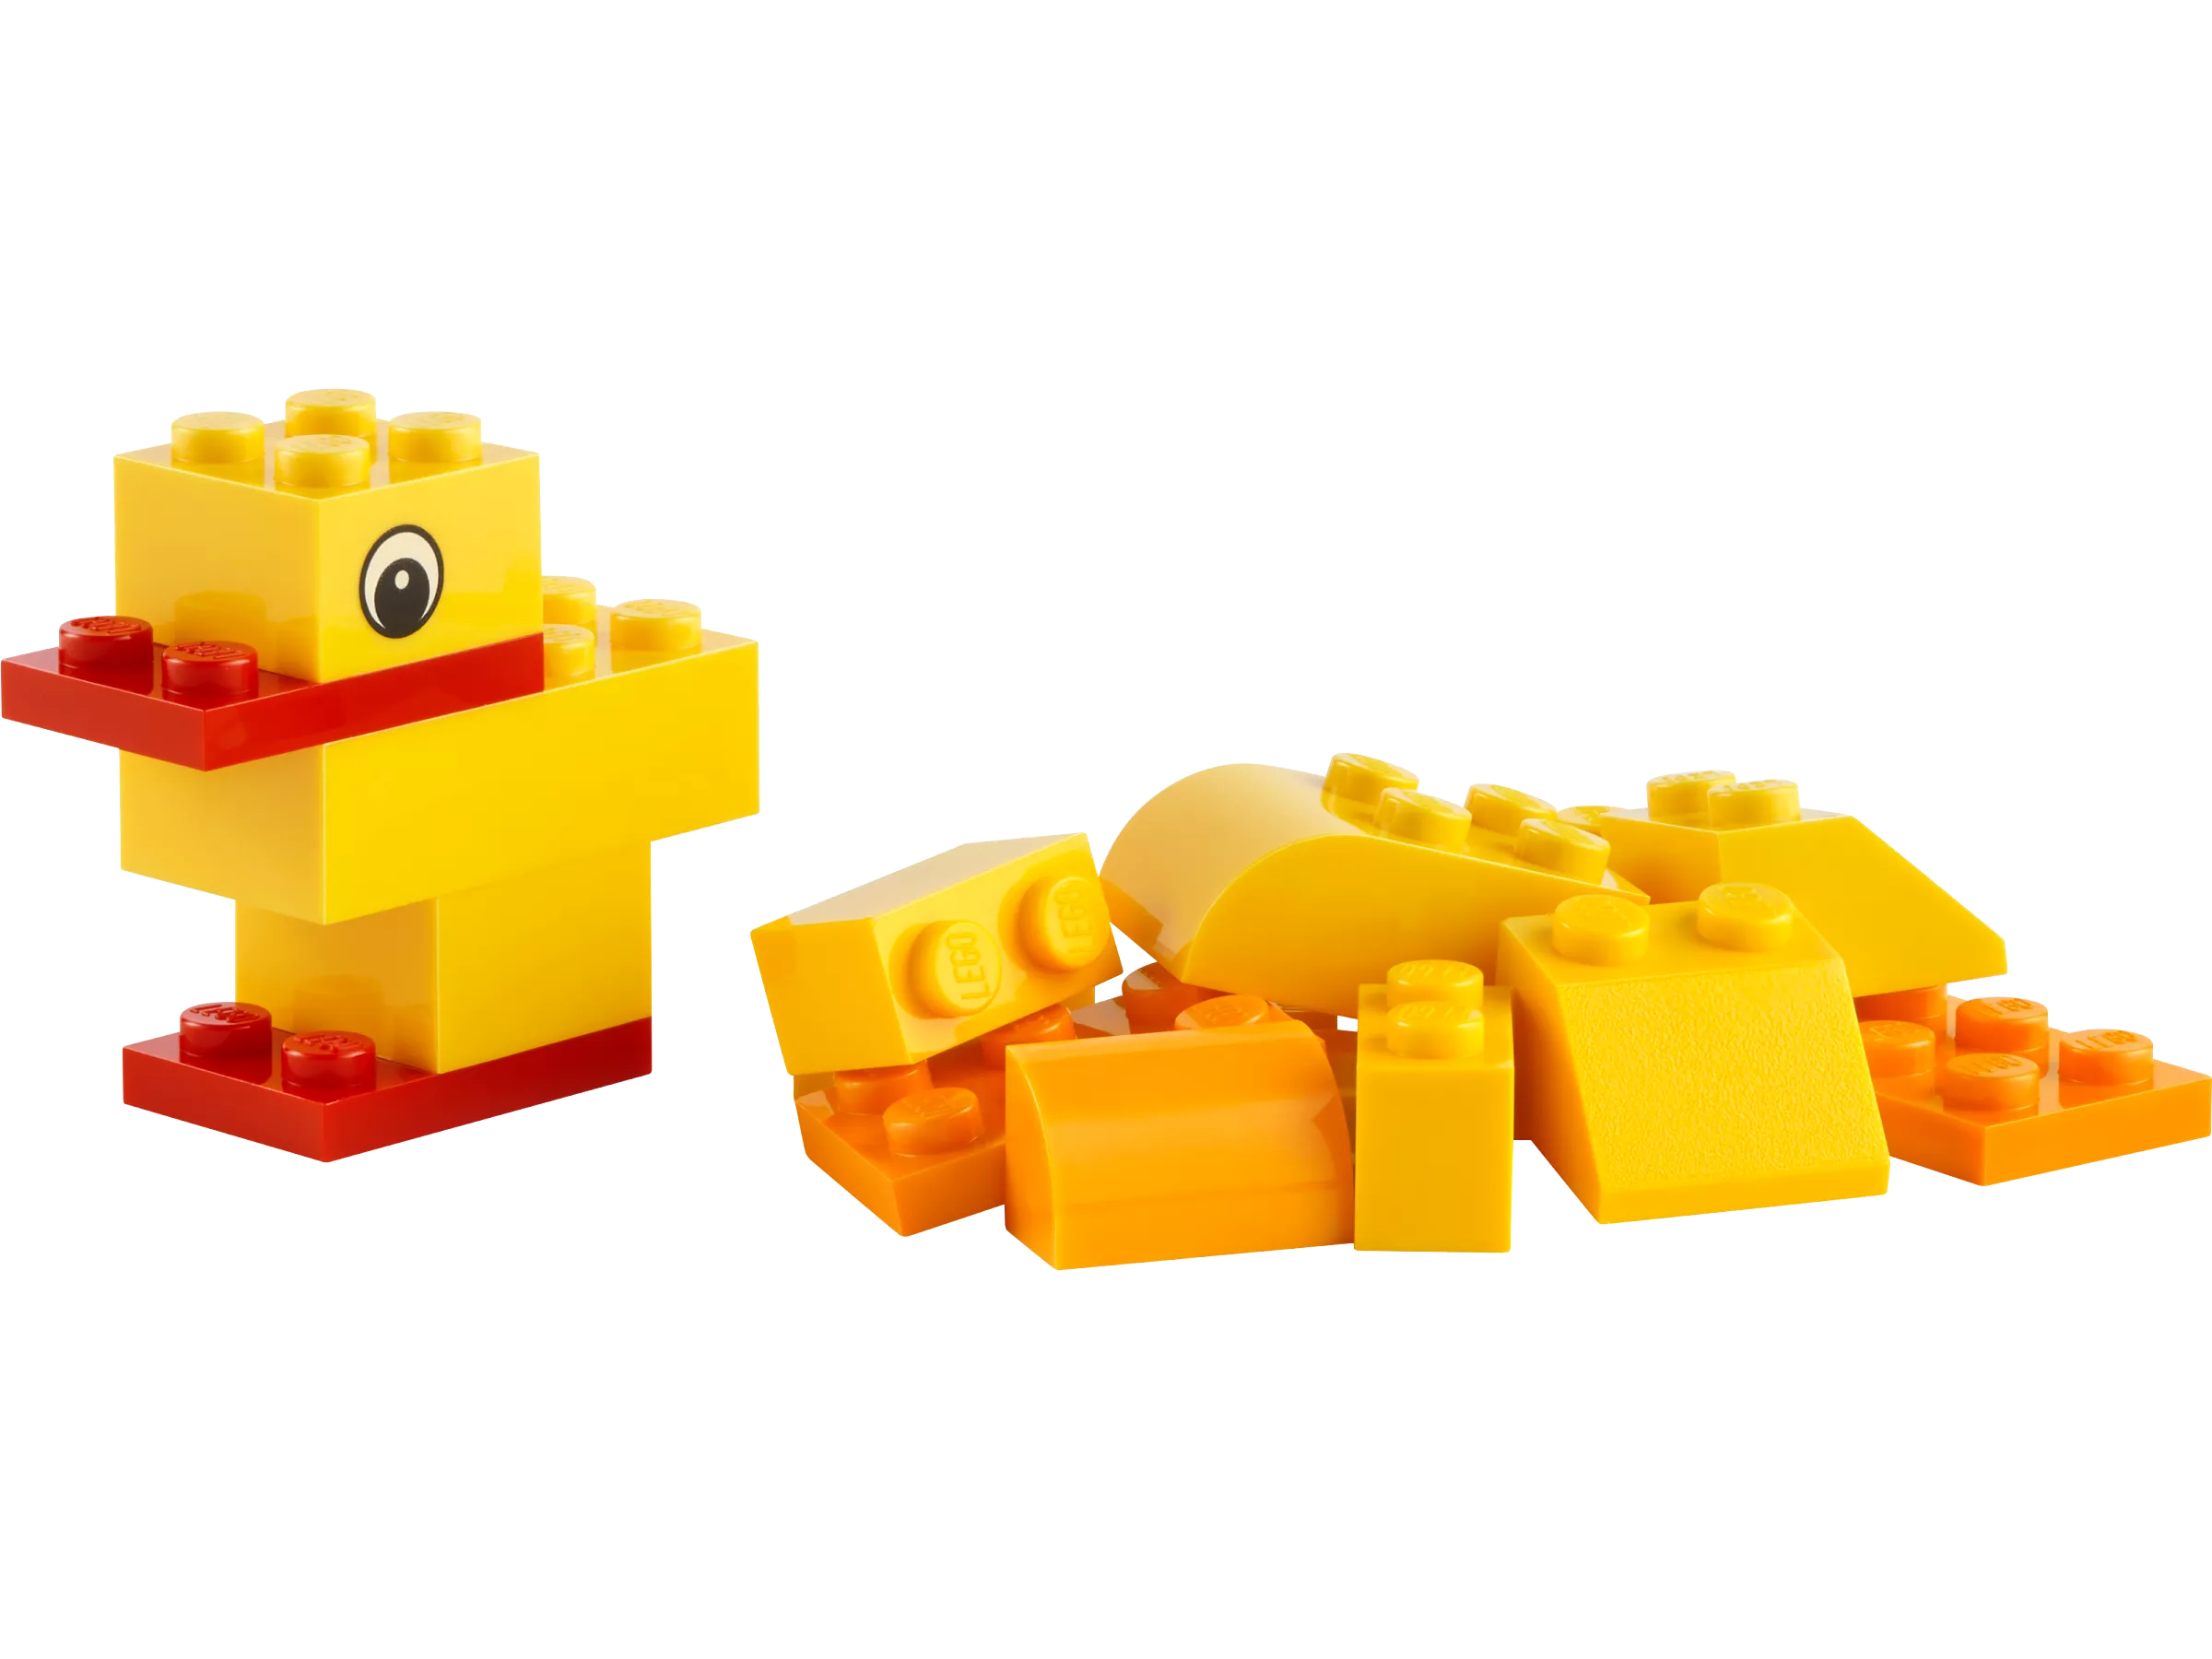 LEGO 30503 Freies Bauen: Tiere – Du entscheidest!